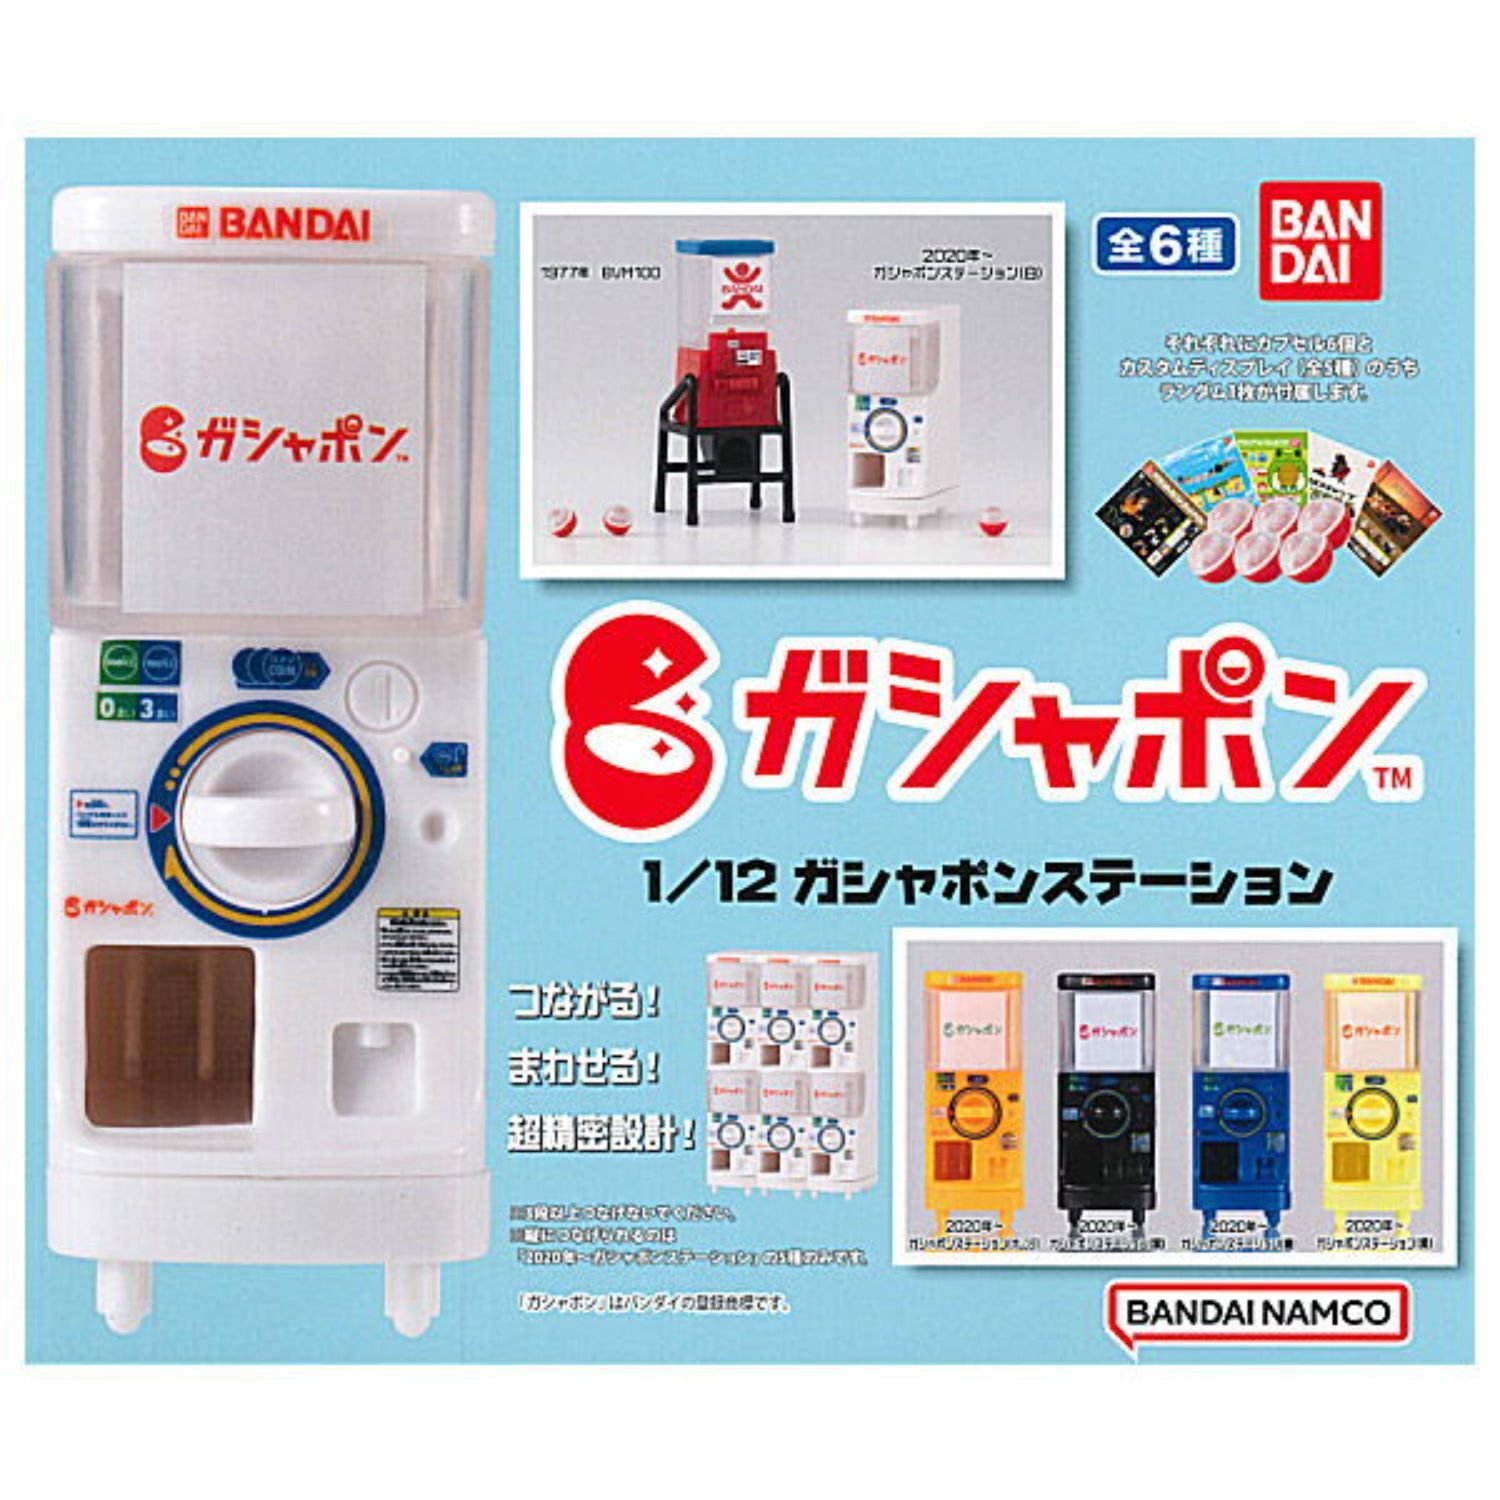 1/12 Gashapon Station BANDAI Capsule Toy 6 Types Full Comp Set Gashapon Gacha